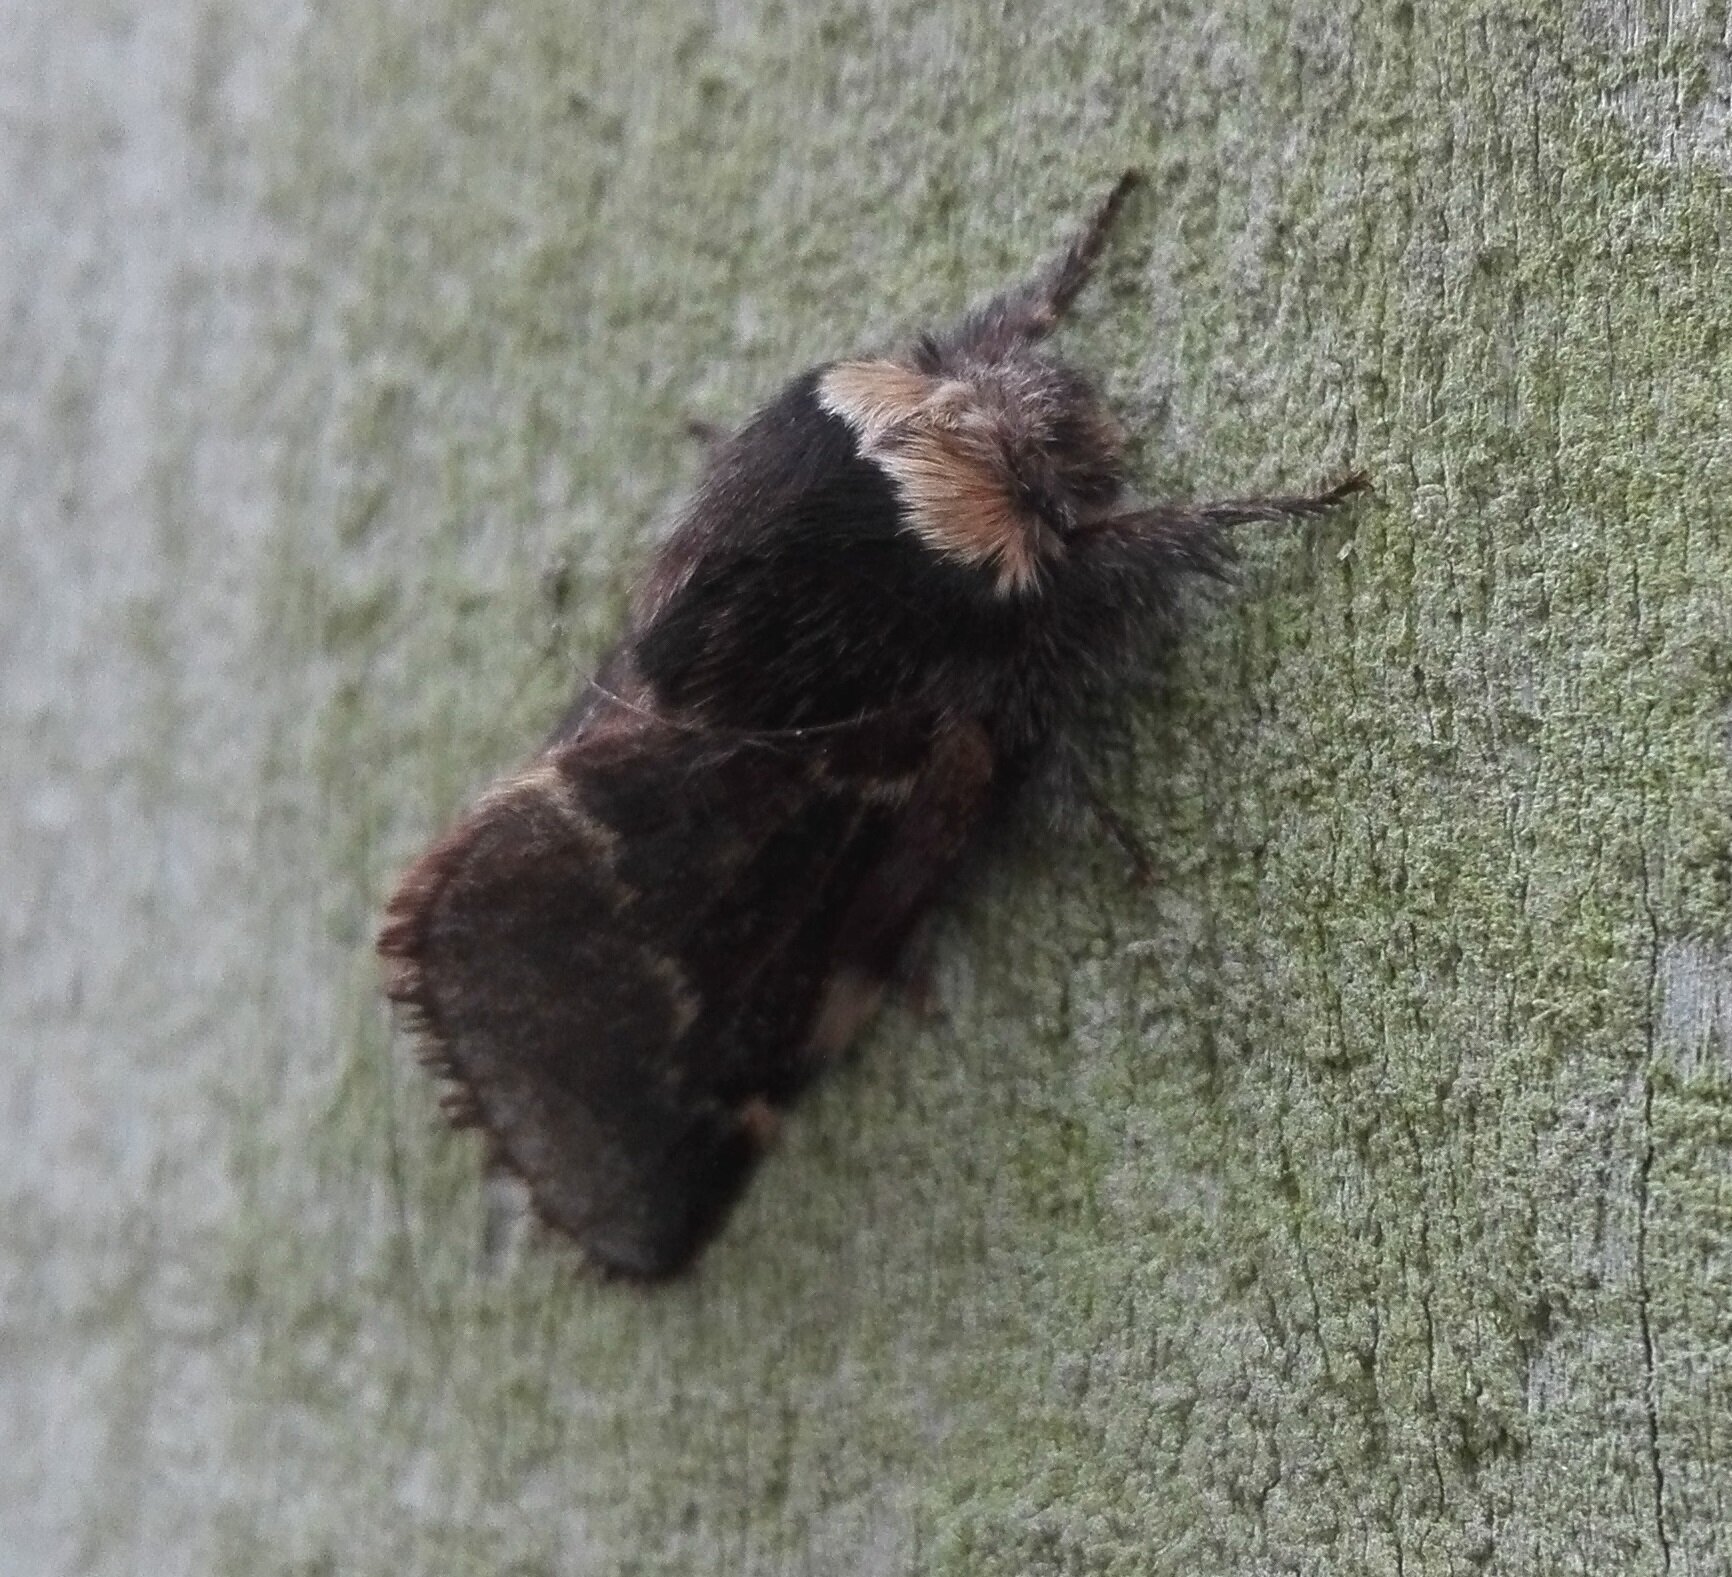 #715 December Moth (Poecilocampa populi)